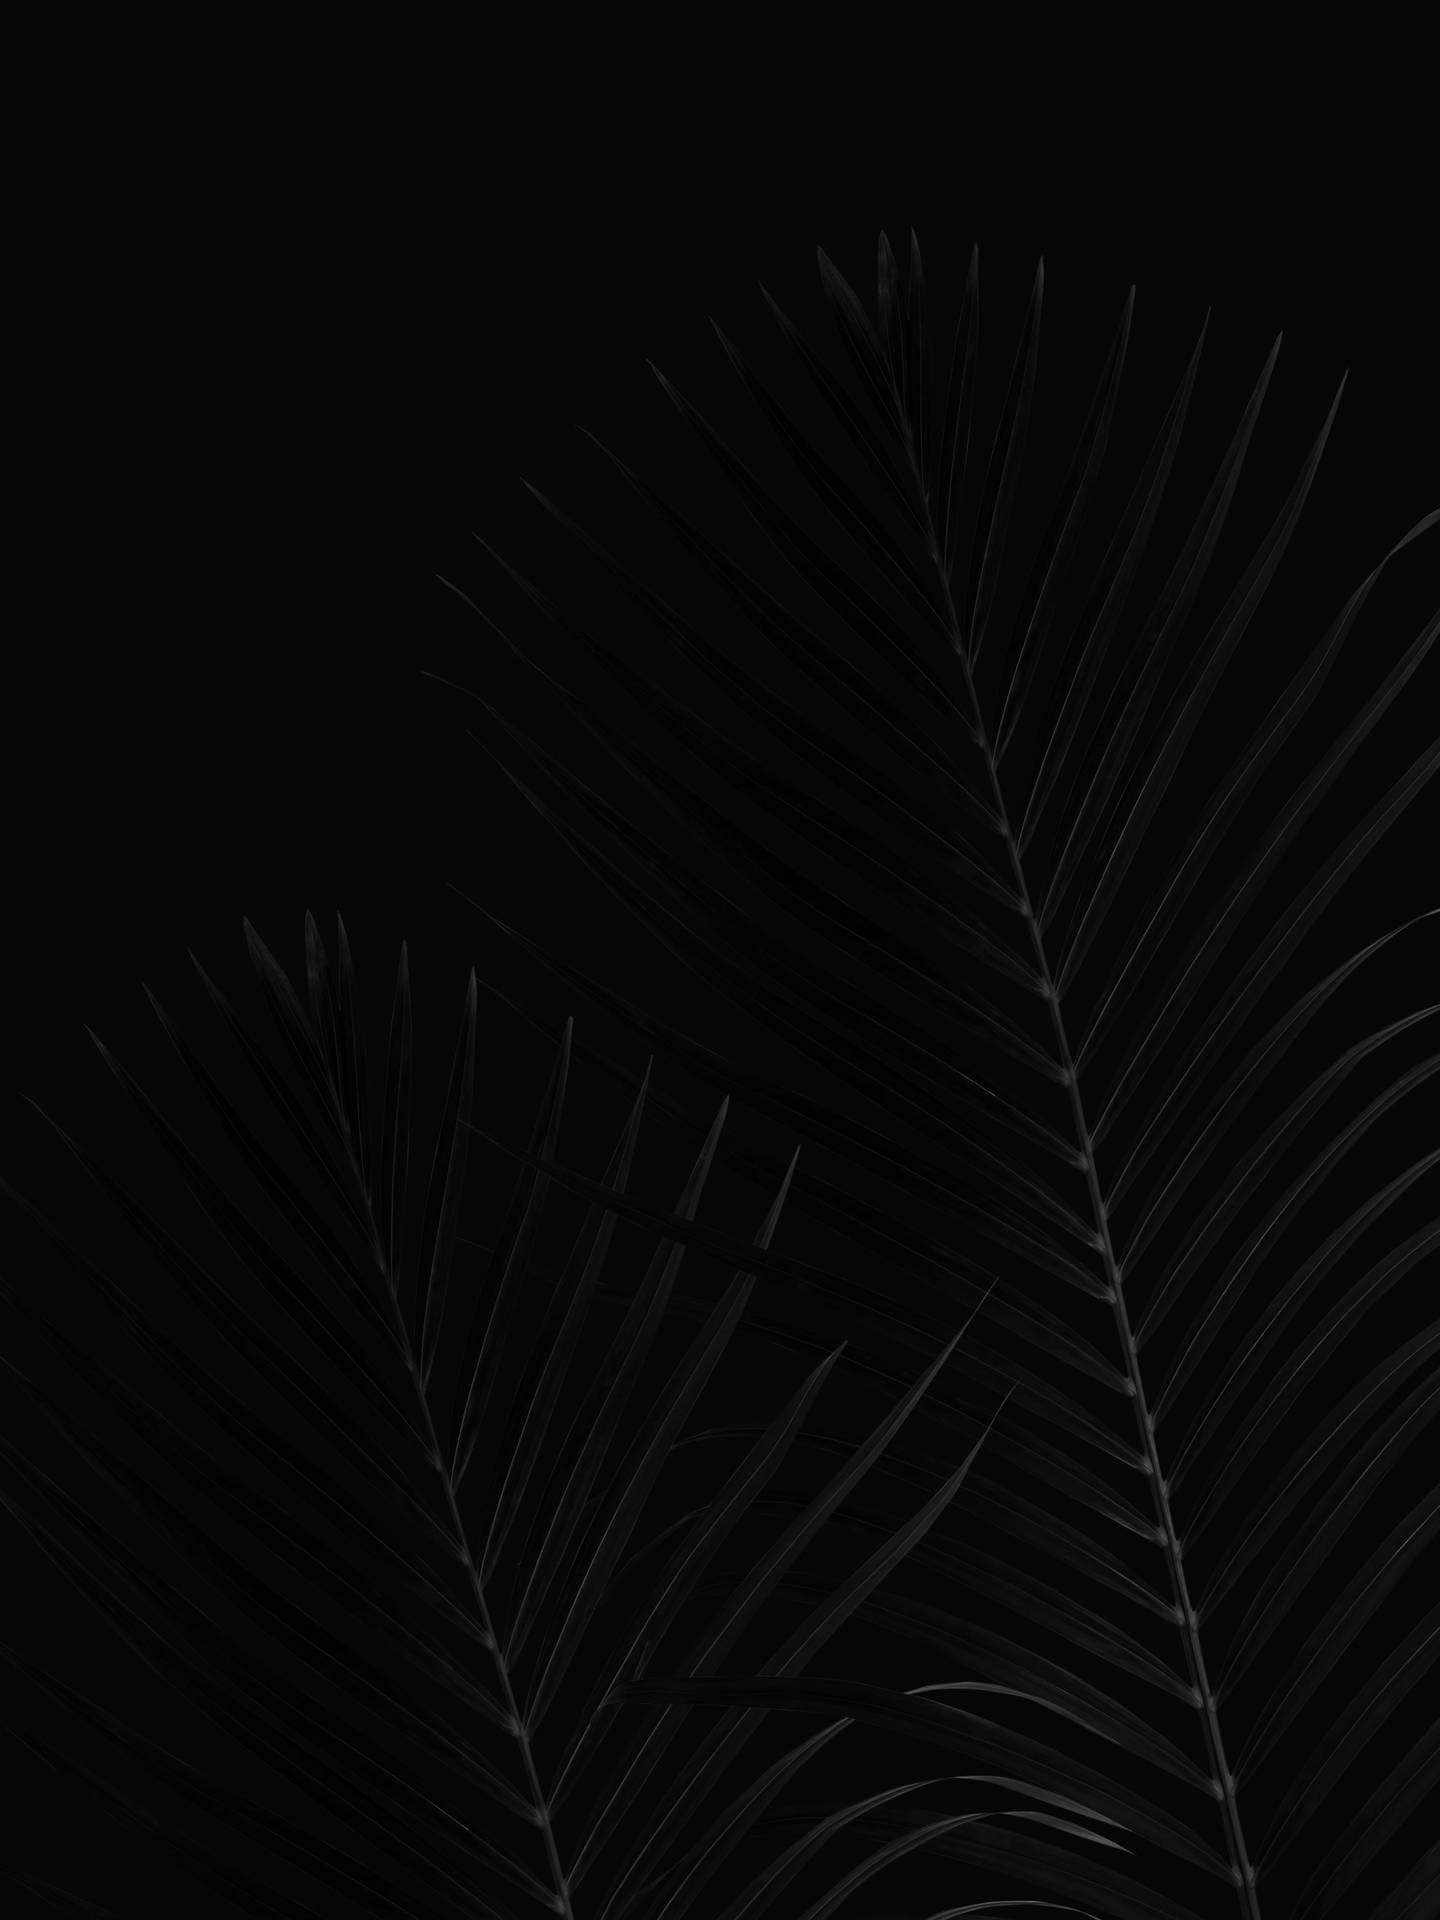 En lys sort side med en diskret tekstur. Wallpaper